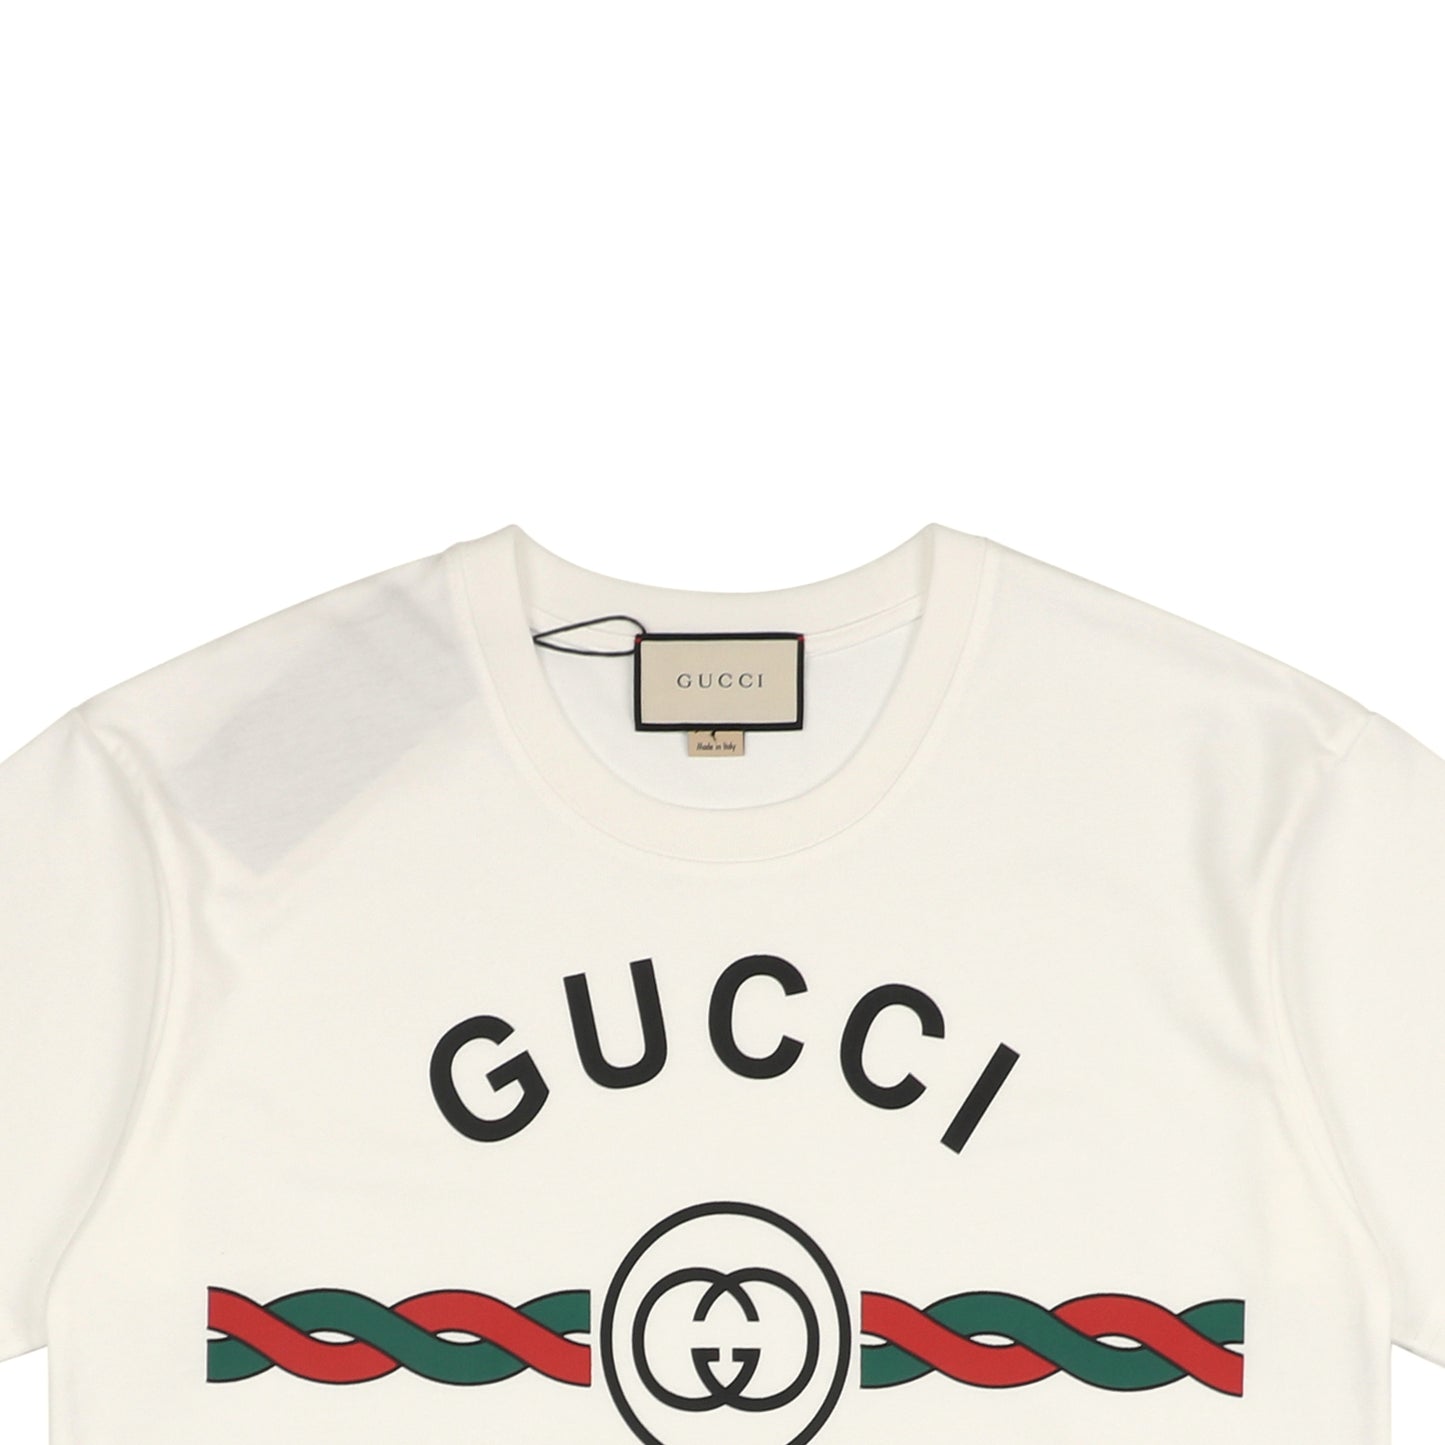 Gucc1 Firenze T-Shirt